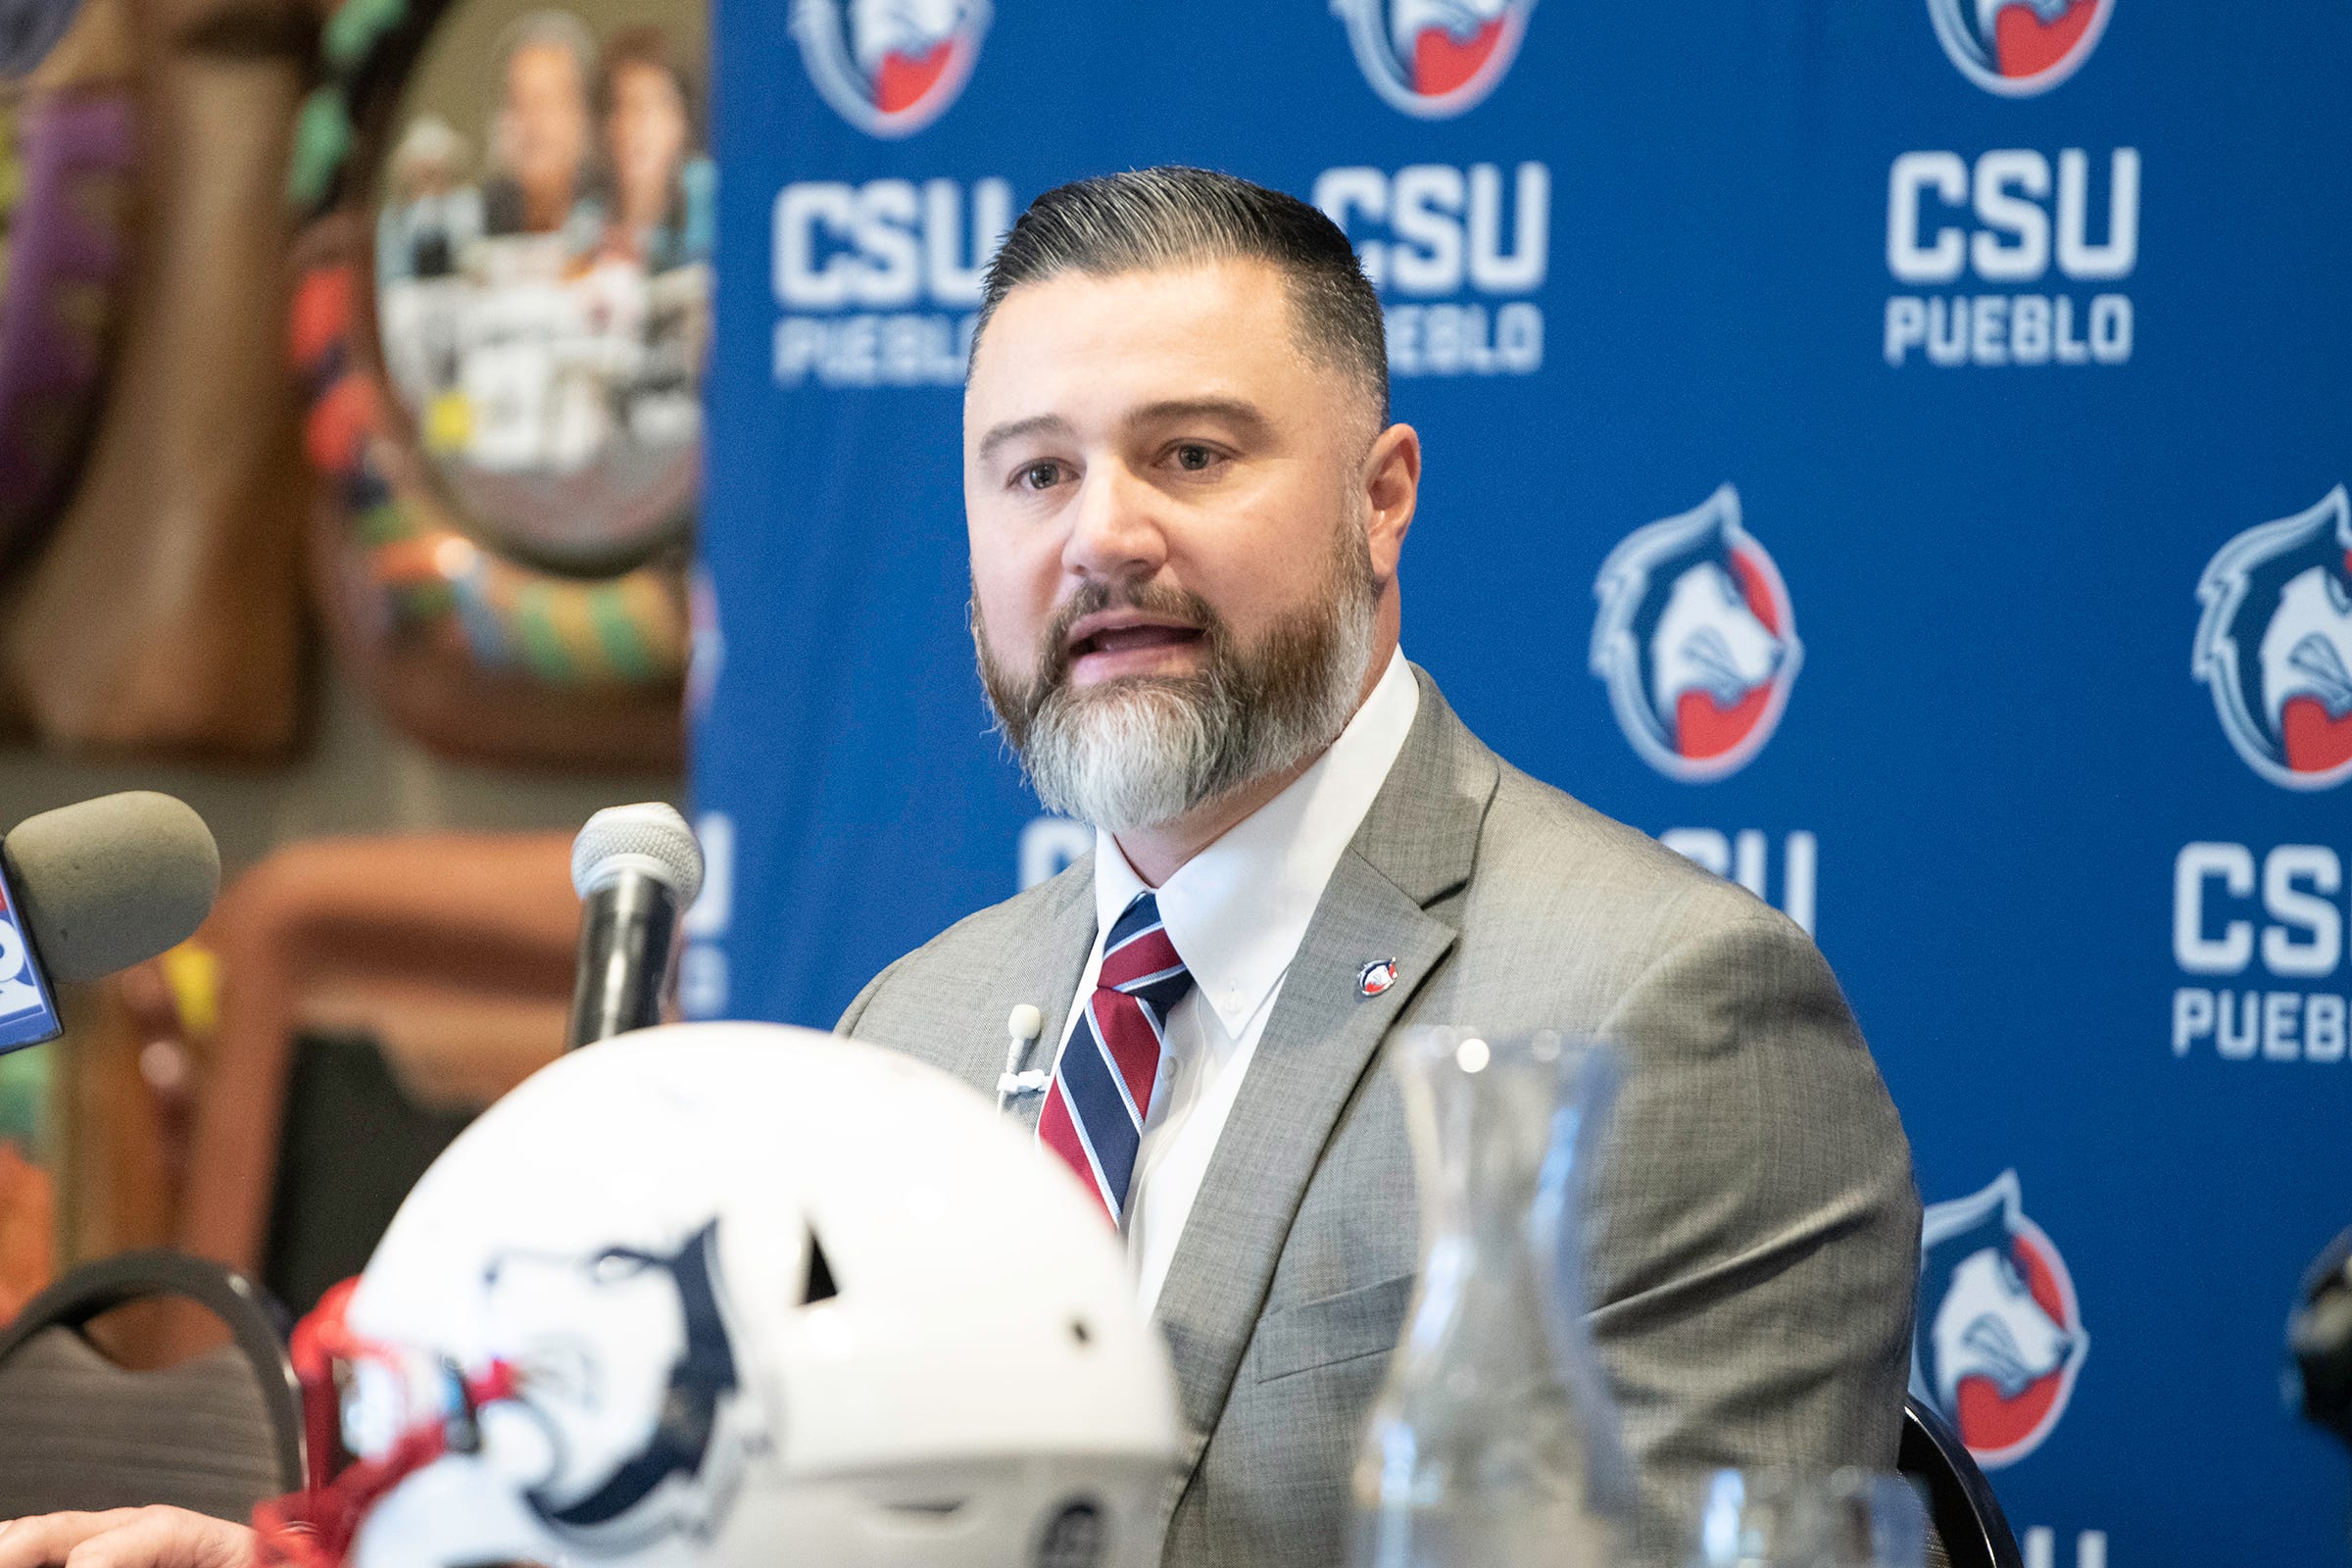 Phillip Vigil introduced as new CSU Pueblo football coach